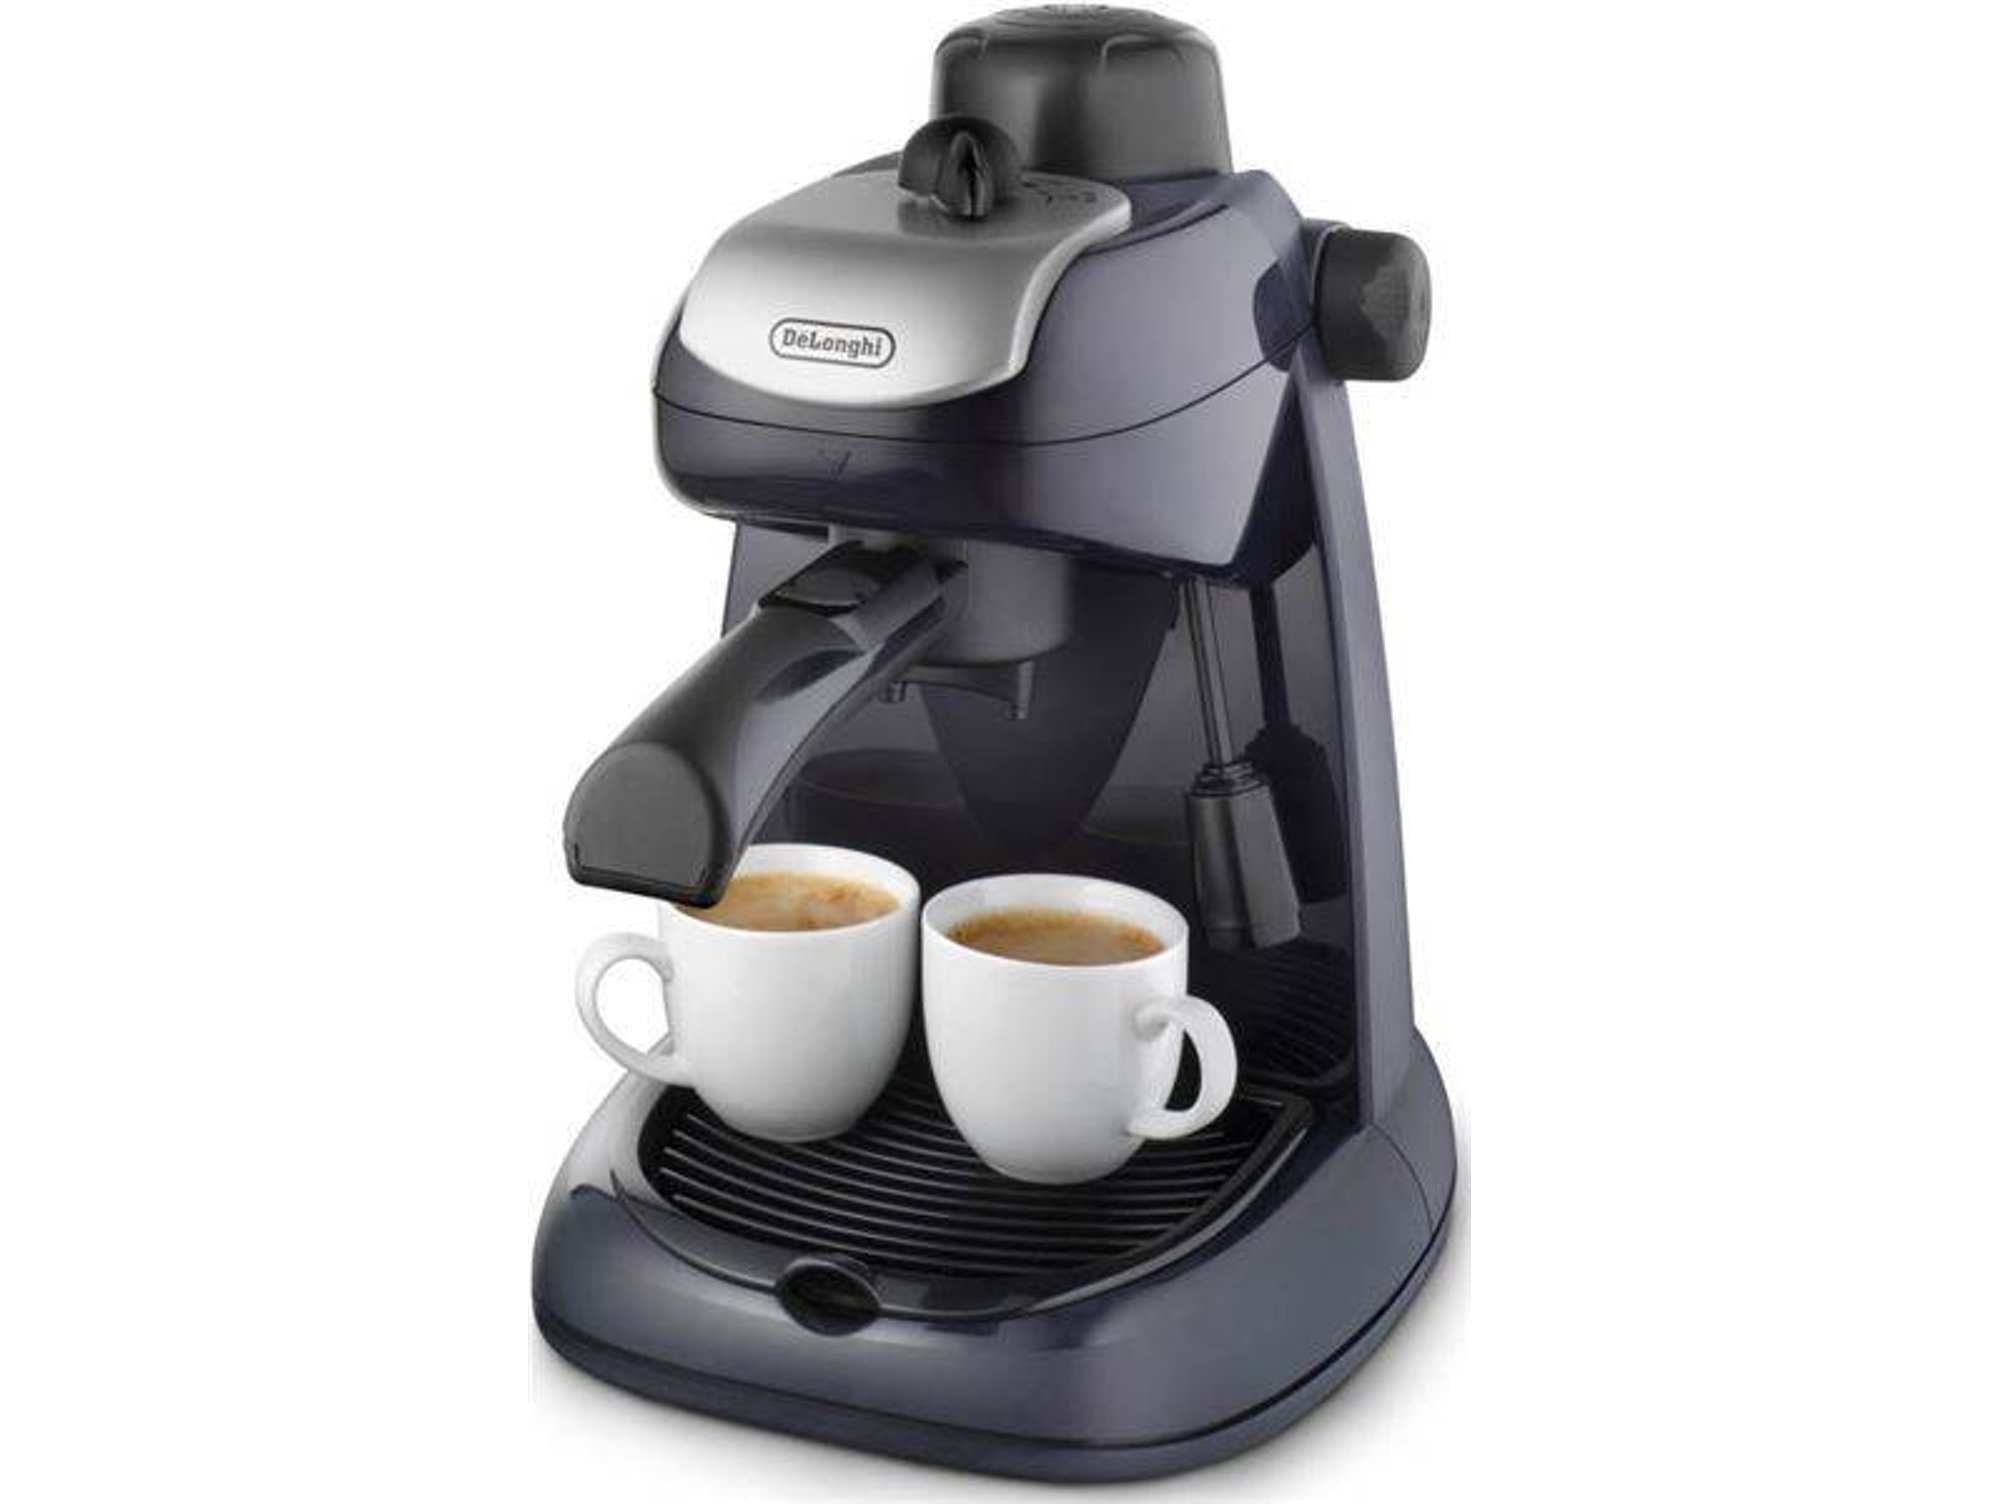 Cafetera Delonghi Ec7.1 3.5 bar molido ec7 800w expresso espresso manual 7 longhi potencia sistema